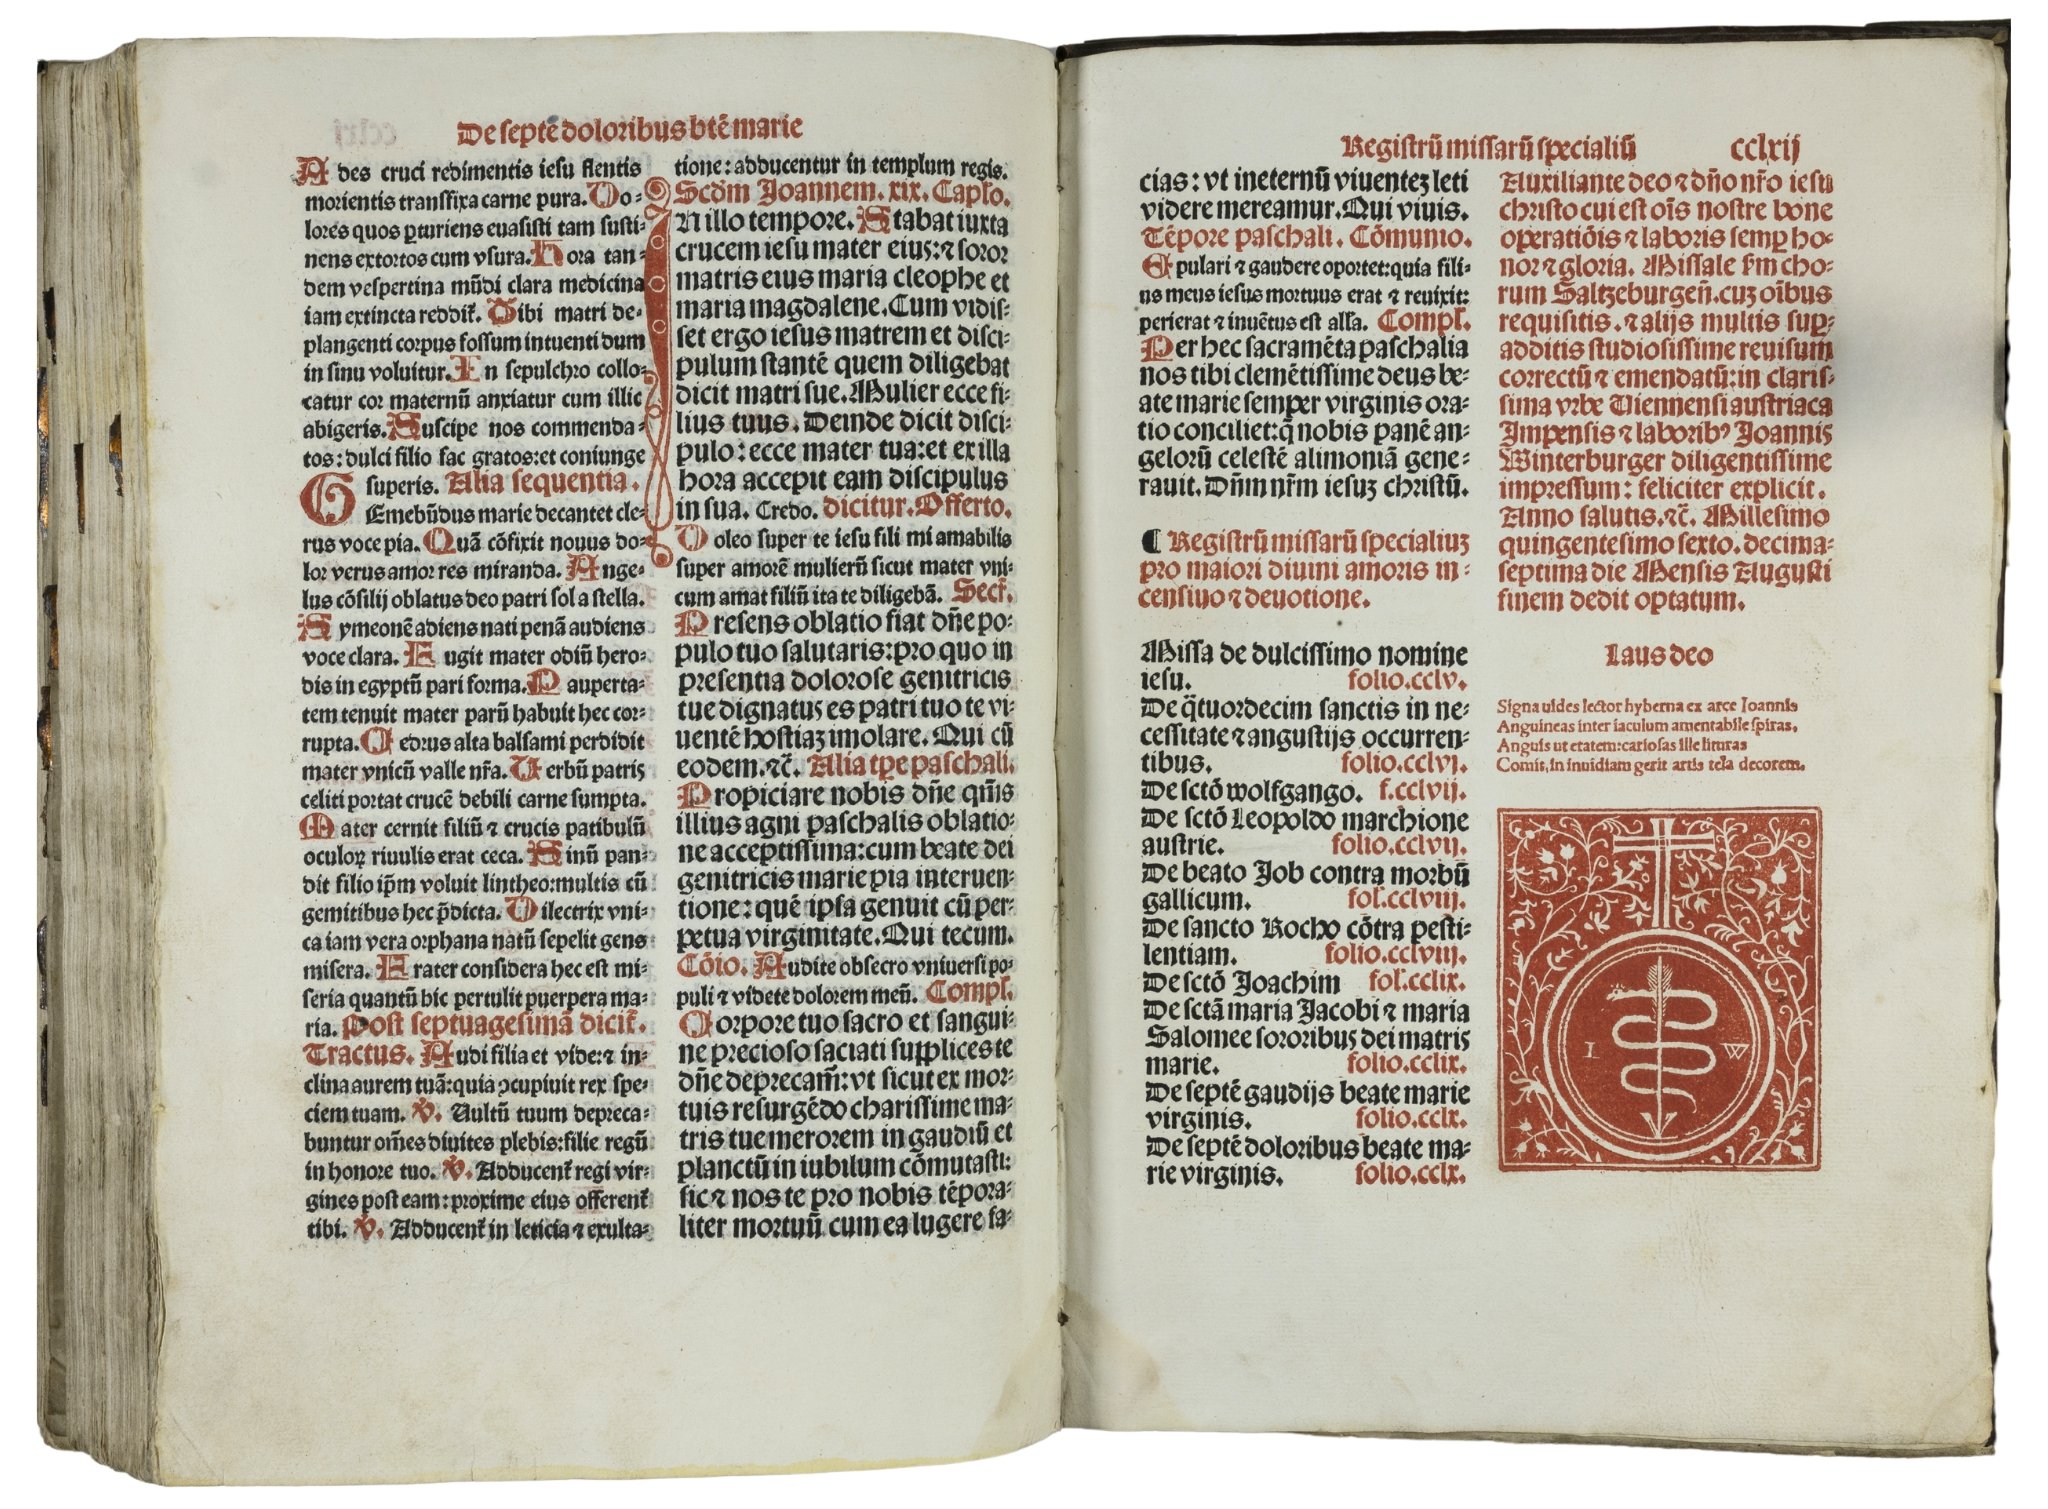 Missale-Saltzeburgense-lucas-cranach-der-aeltere-elder-crucifixion-missel-illuminated-woodcut-1506-5.jpg